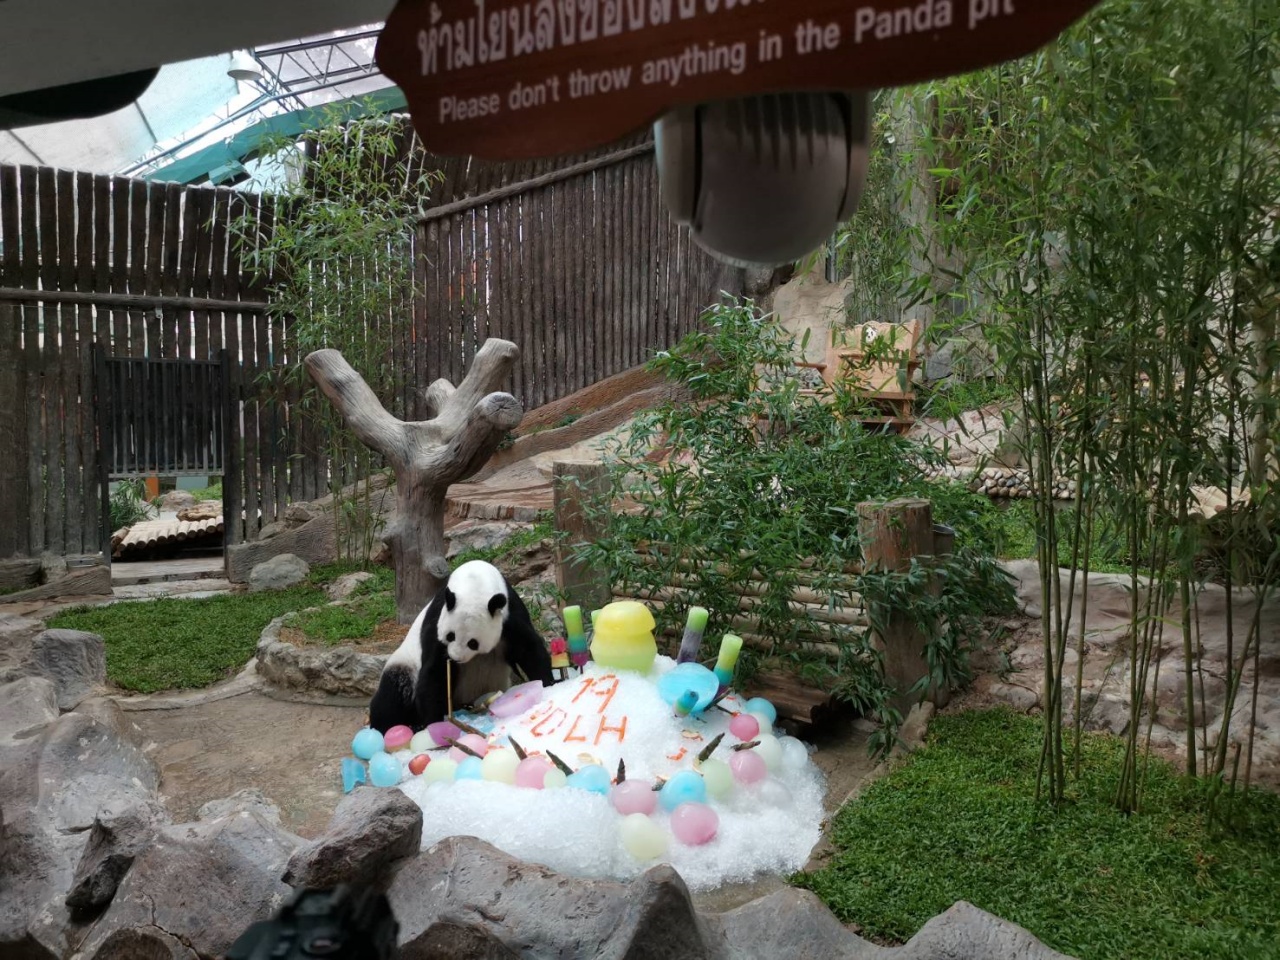 สวนสัตว์เชียงใหม่จัดงานฉลองวันเกิดครบรอบ 19 ปีหมีแพนด้าหลินฮุ่ยอย่างยิ่งใหญ่  